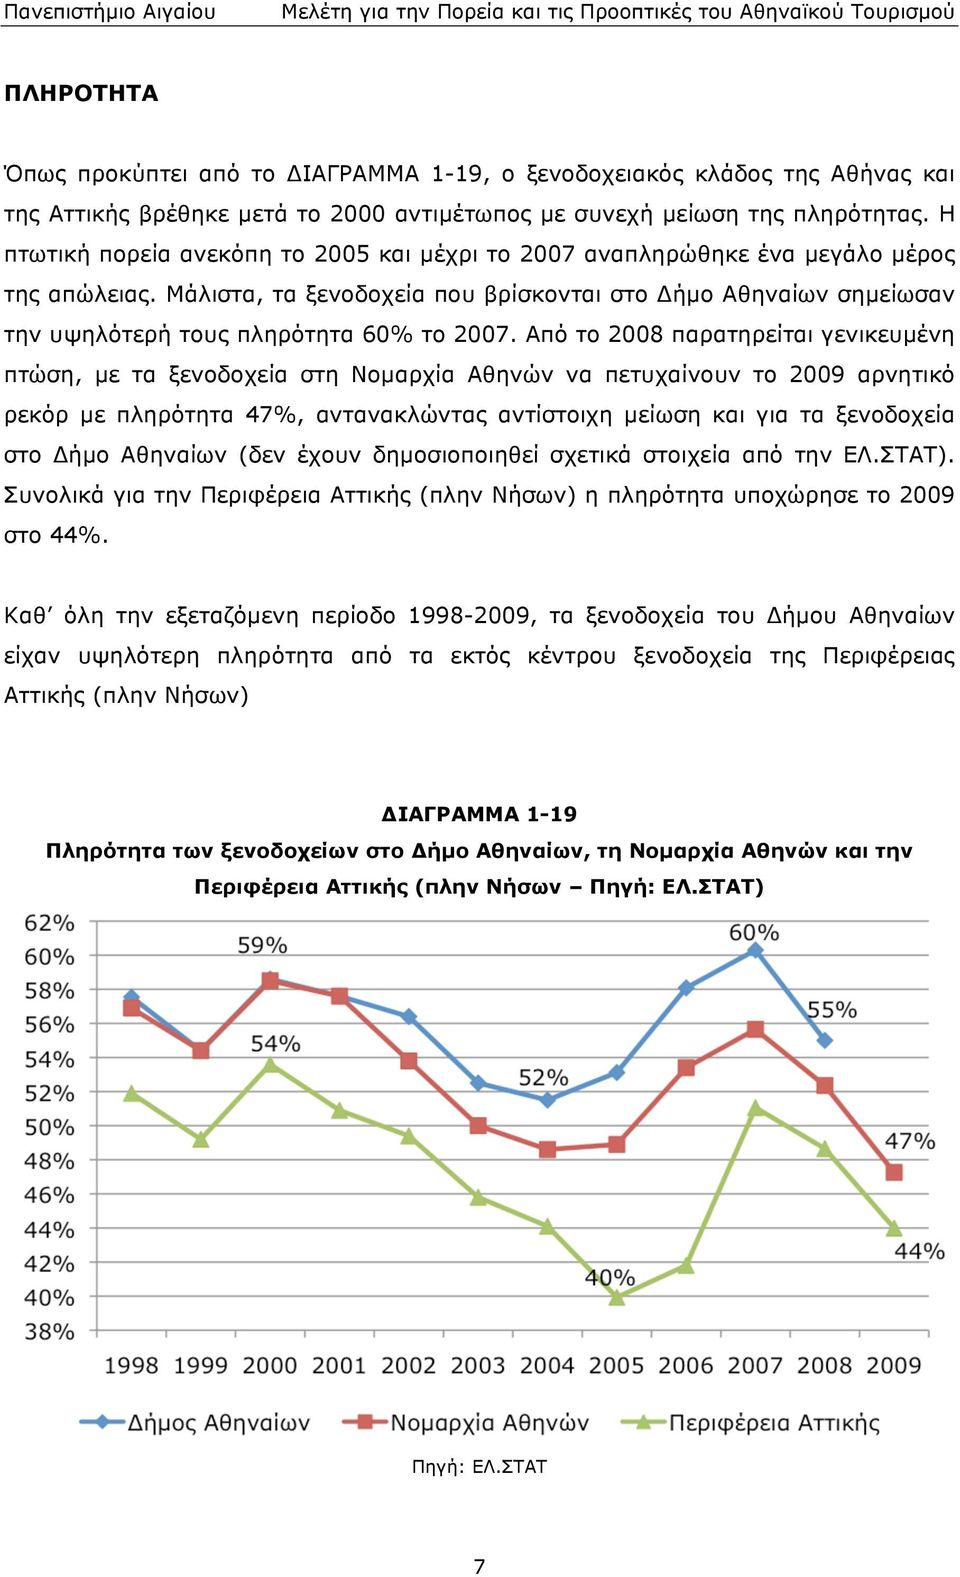 γενικευµένη πτώση, µε τα ξενοδοχεία στη Νοµαρχία Αθηνών να πετυχαίνουν το 2009 αρνητικό ρεκόρ µε πληρότητα 47%, αντανακλώντας αντίστοιχη µείωση και για τα ξενοδοχεία στο Δήµο Αθηναίων (δεν έχουν